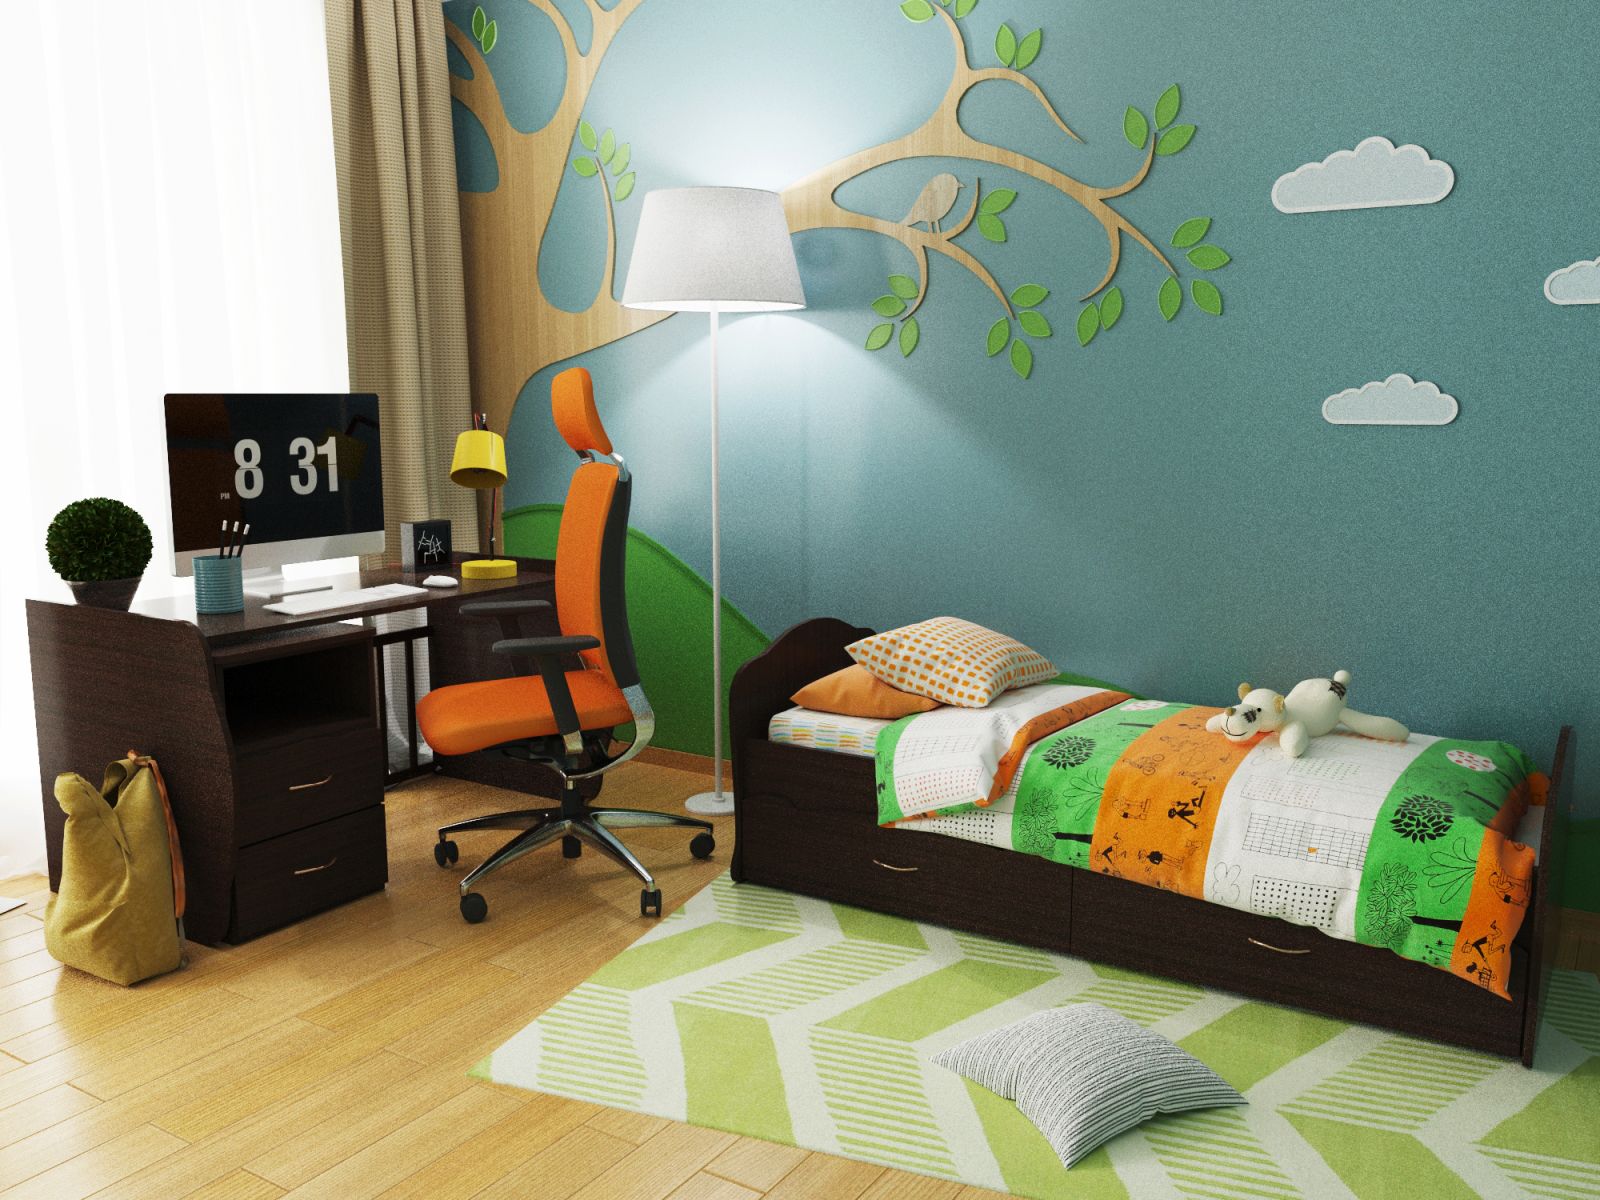 Детская кроватка-трансформер Алиса, кроватка для новорожденных с пеленальным комодом, подростковая кровать + письменный стол с ящиками